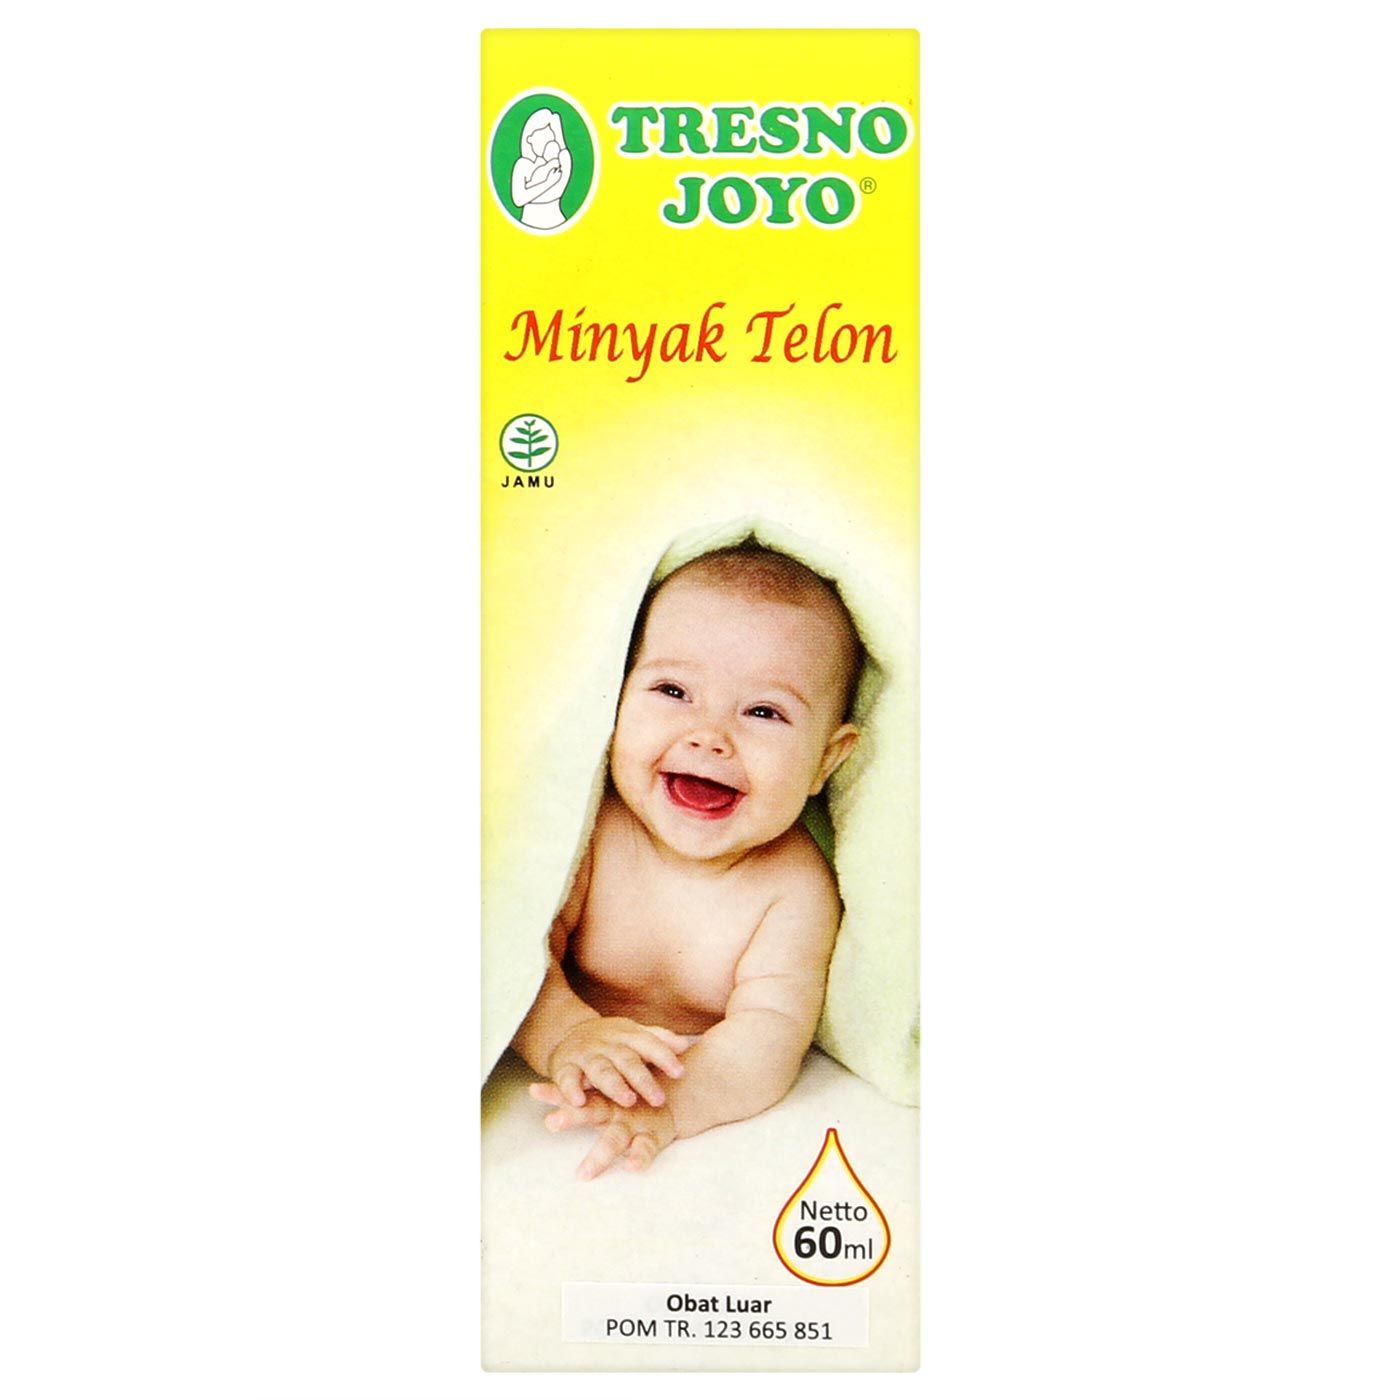 Tresno Joyo Minyak Telon 60ml - 1